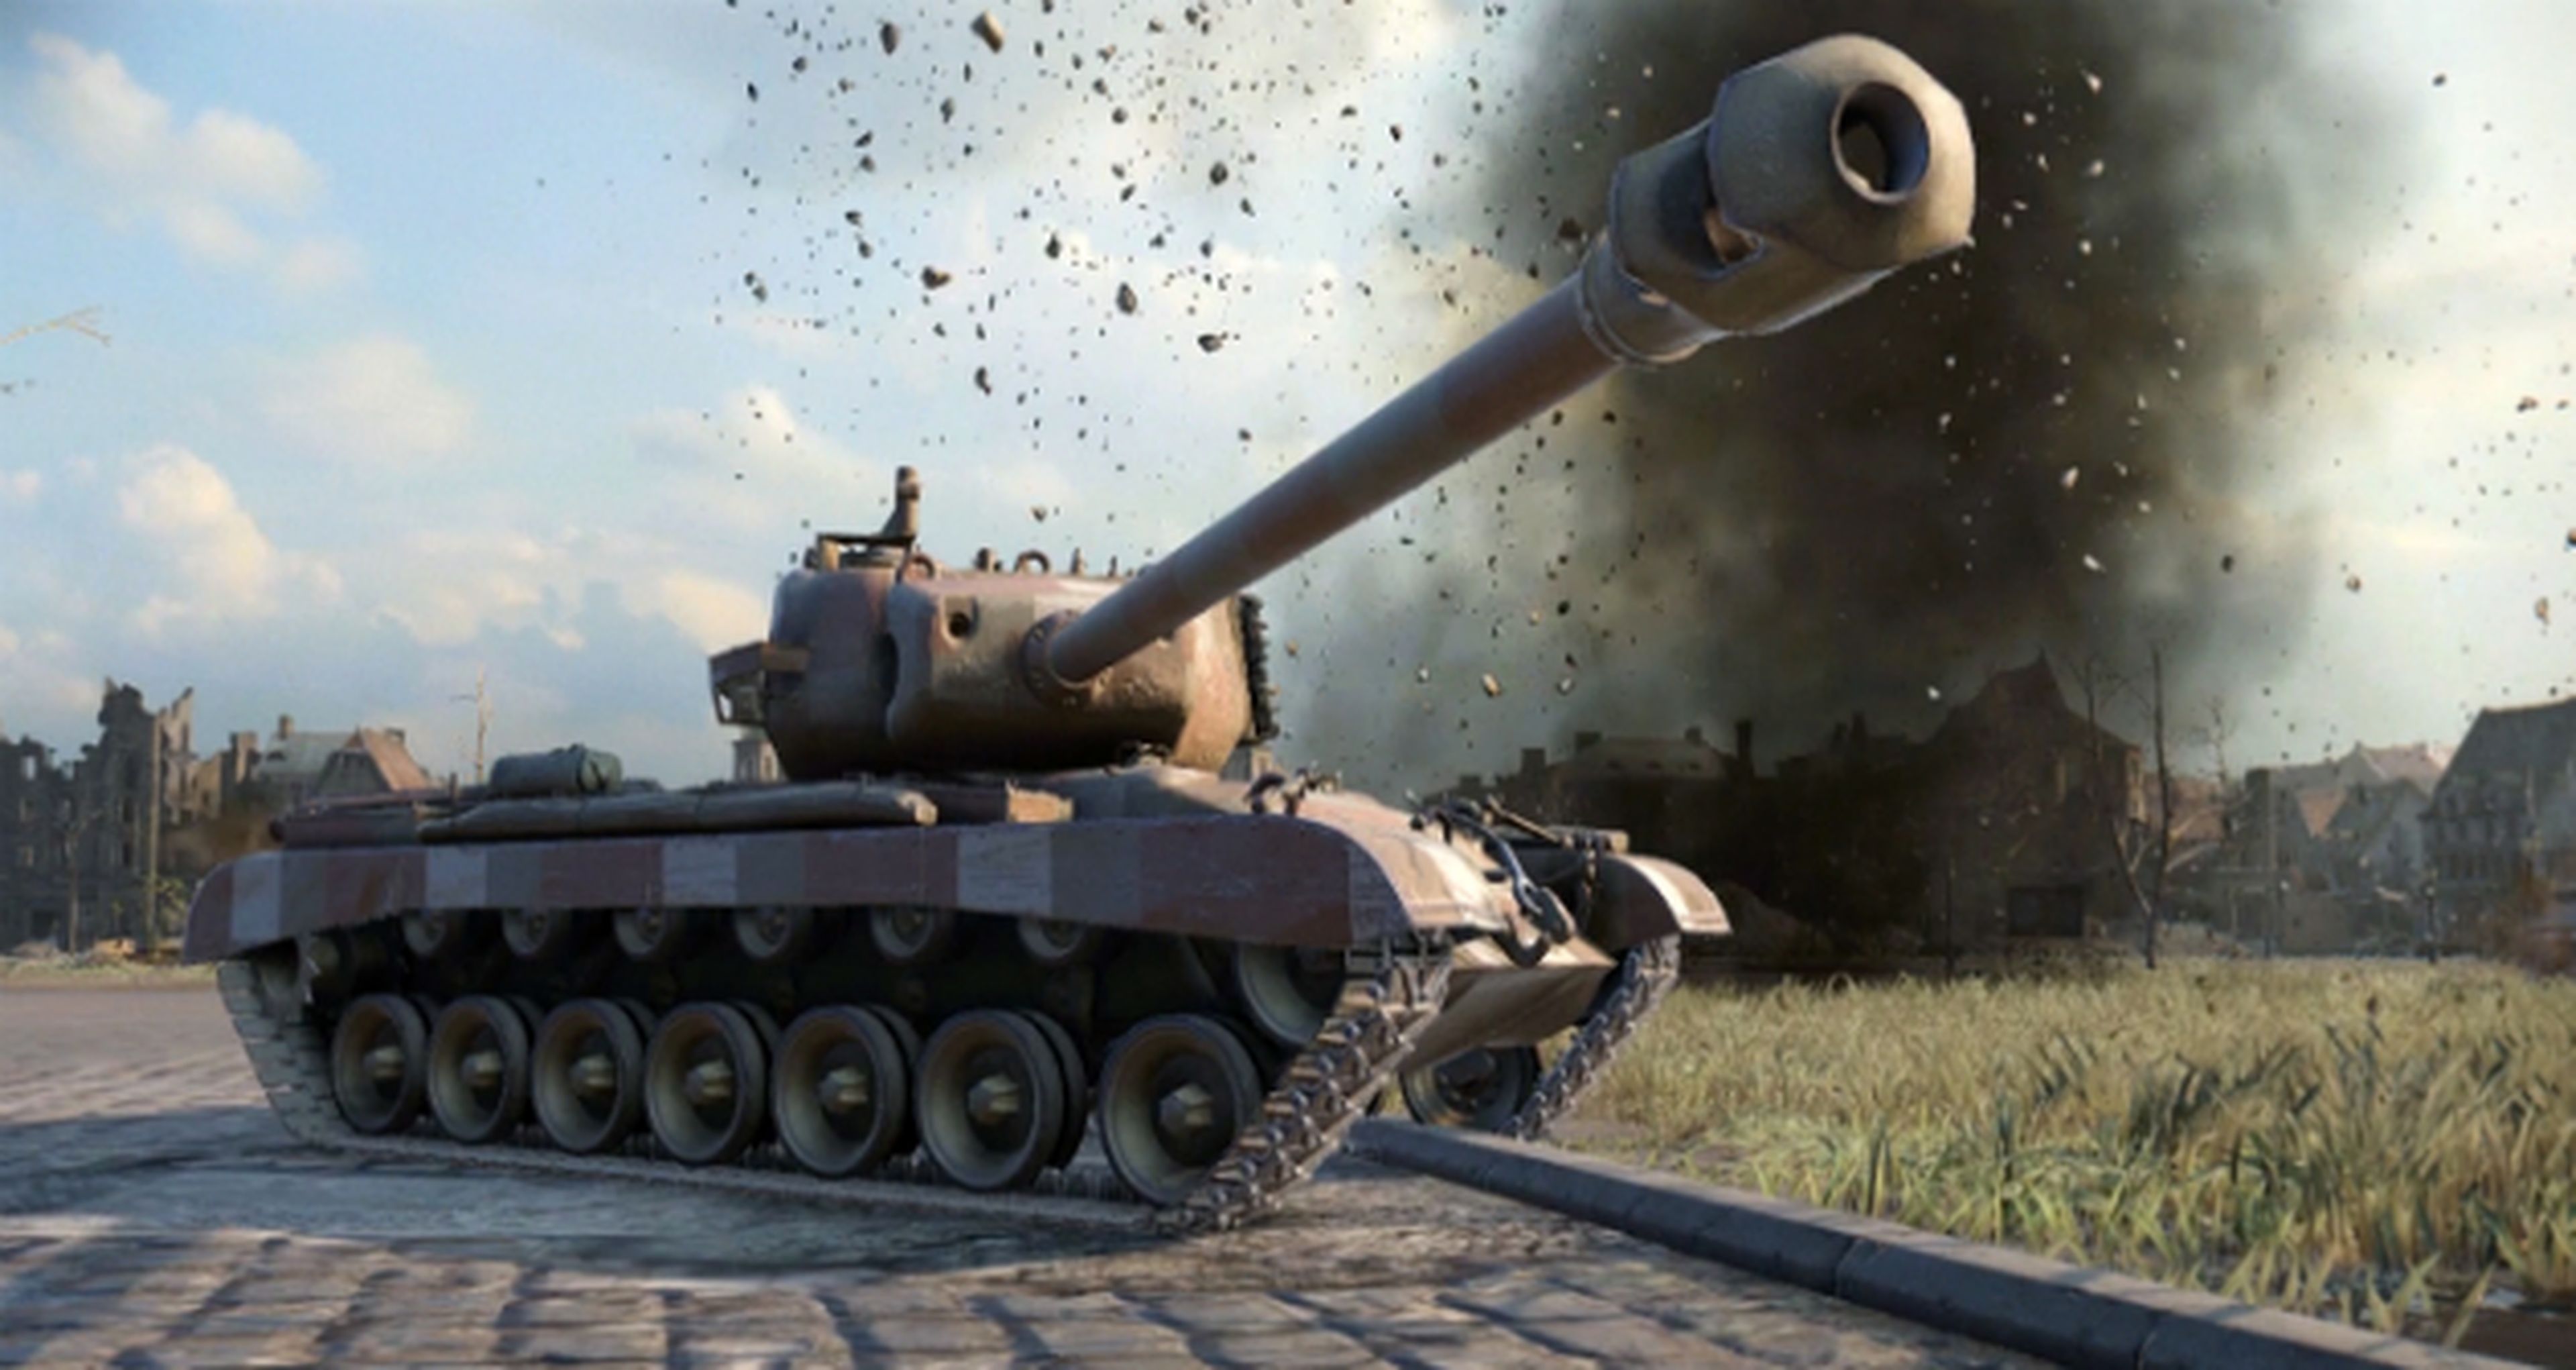 World of Tanks en PS4, fecha de la segunda beta abierta